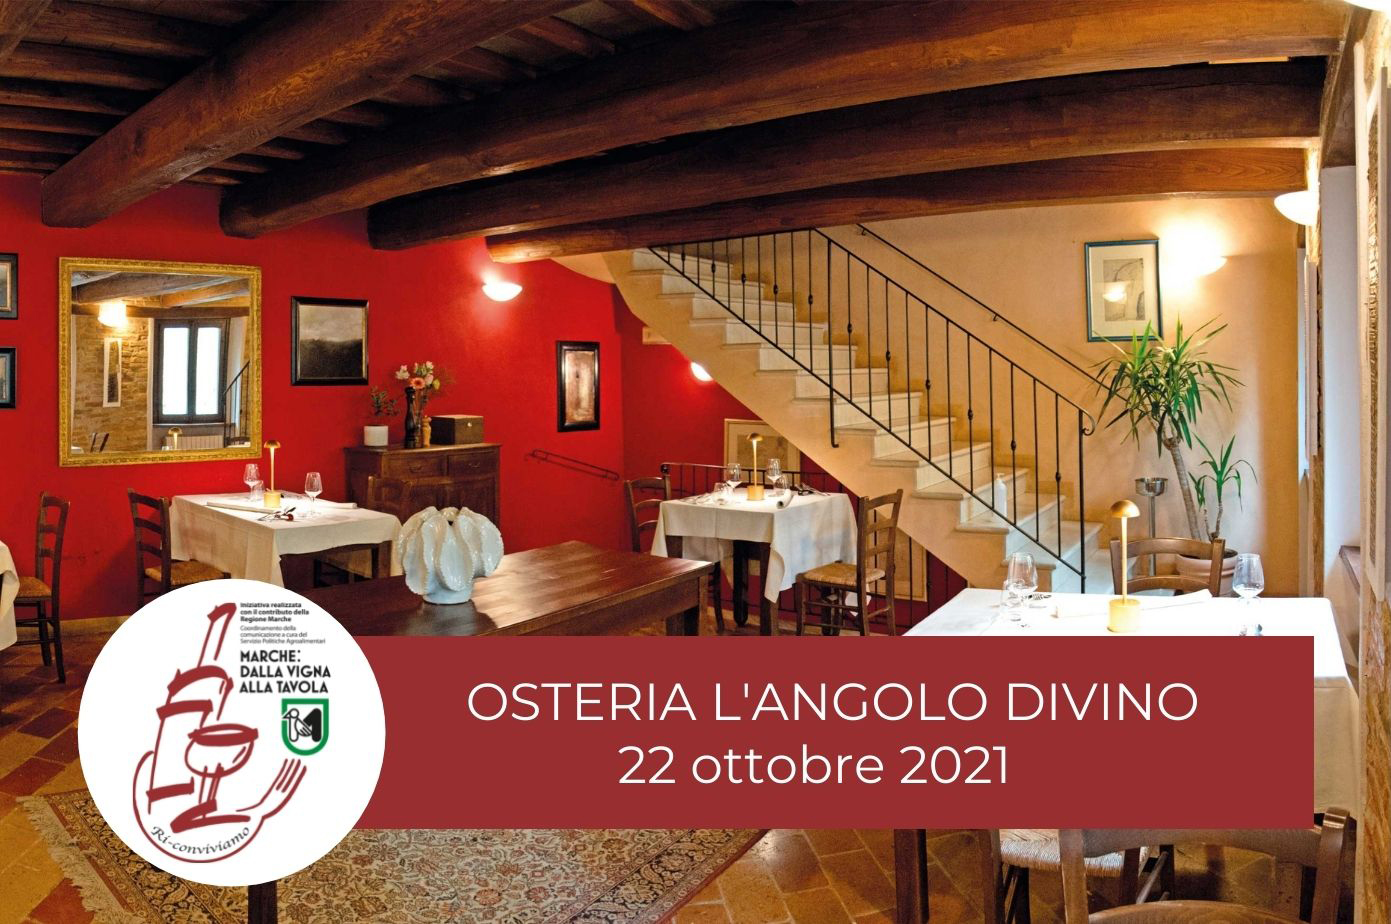 Serata di degustazione il 22 ottobre all'Osteria l'Angolo Divino di Tiziano Rossetti - Marche: dalla vigna alla tavola. Ri-Conviviamo